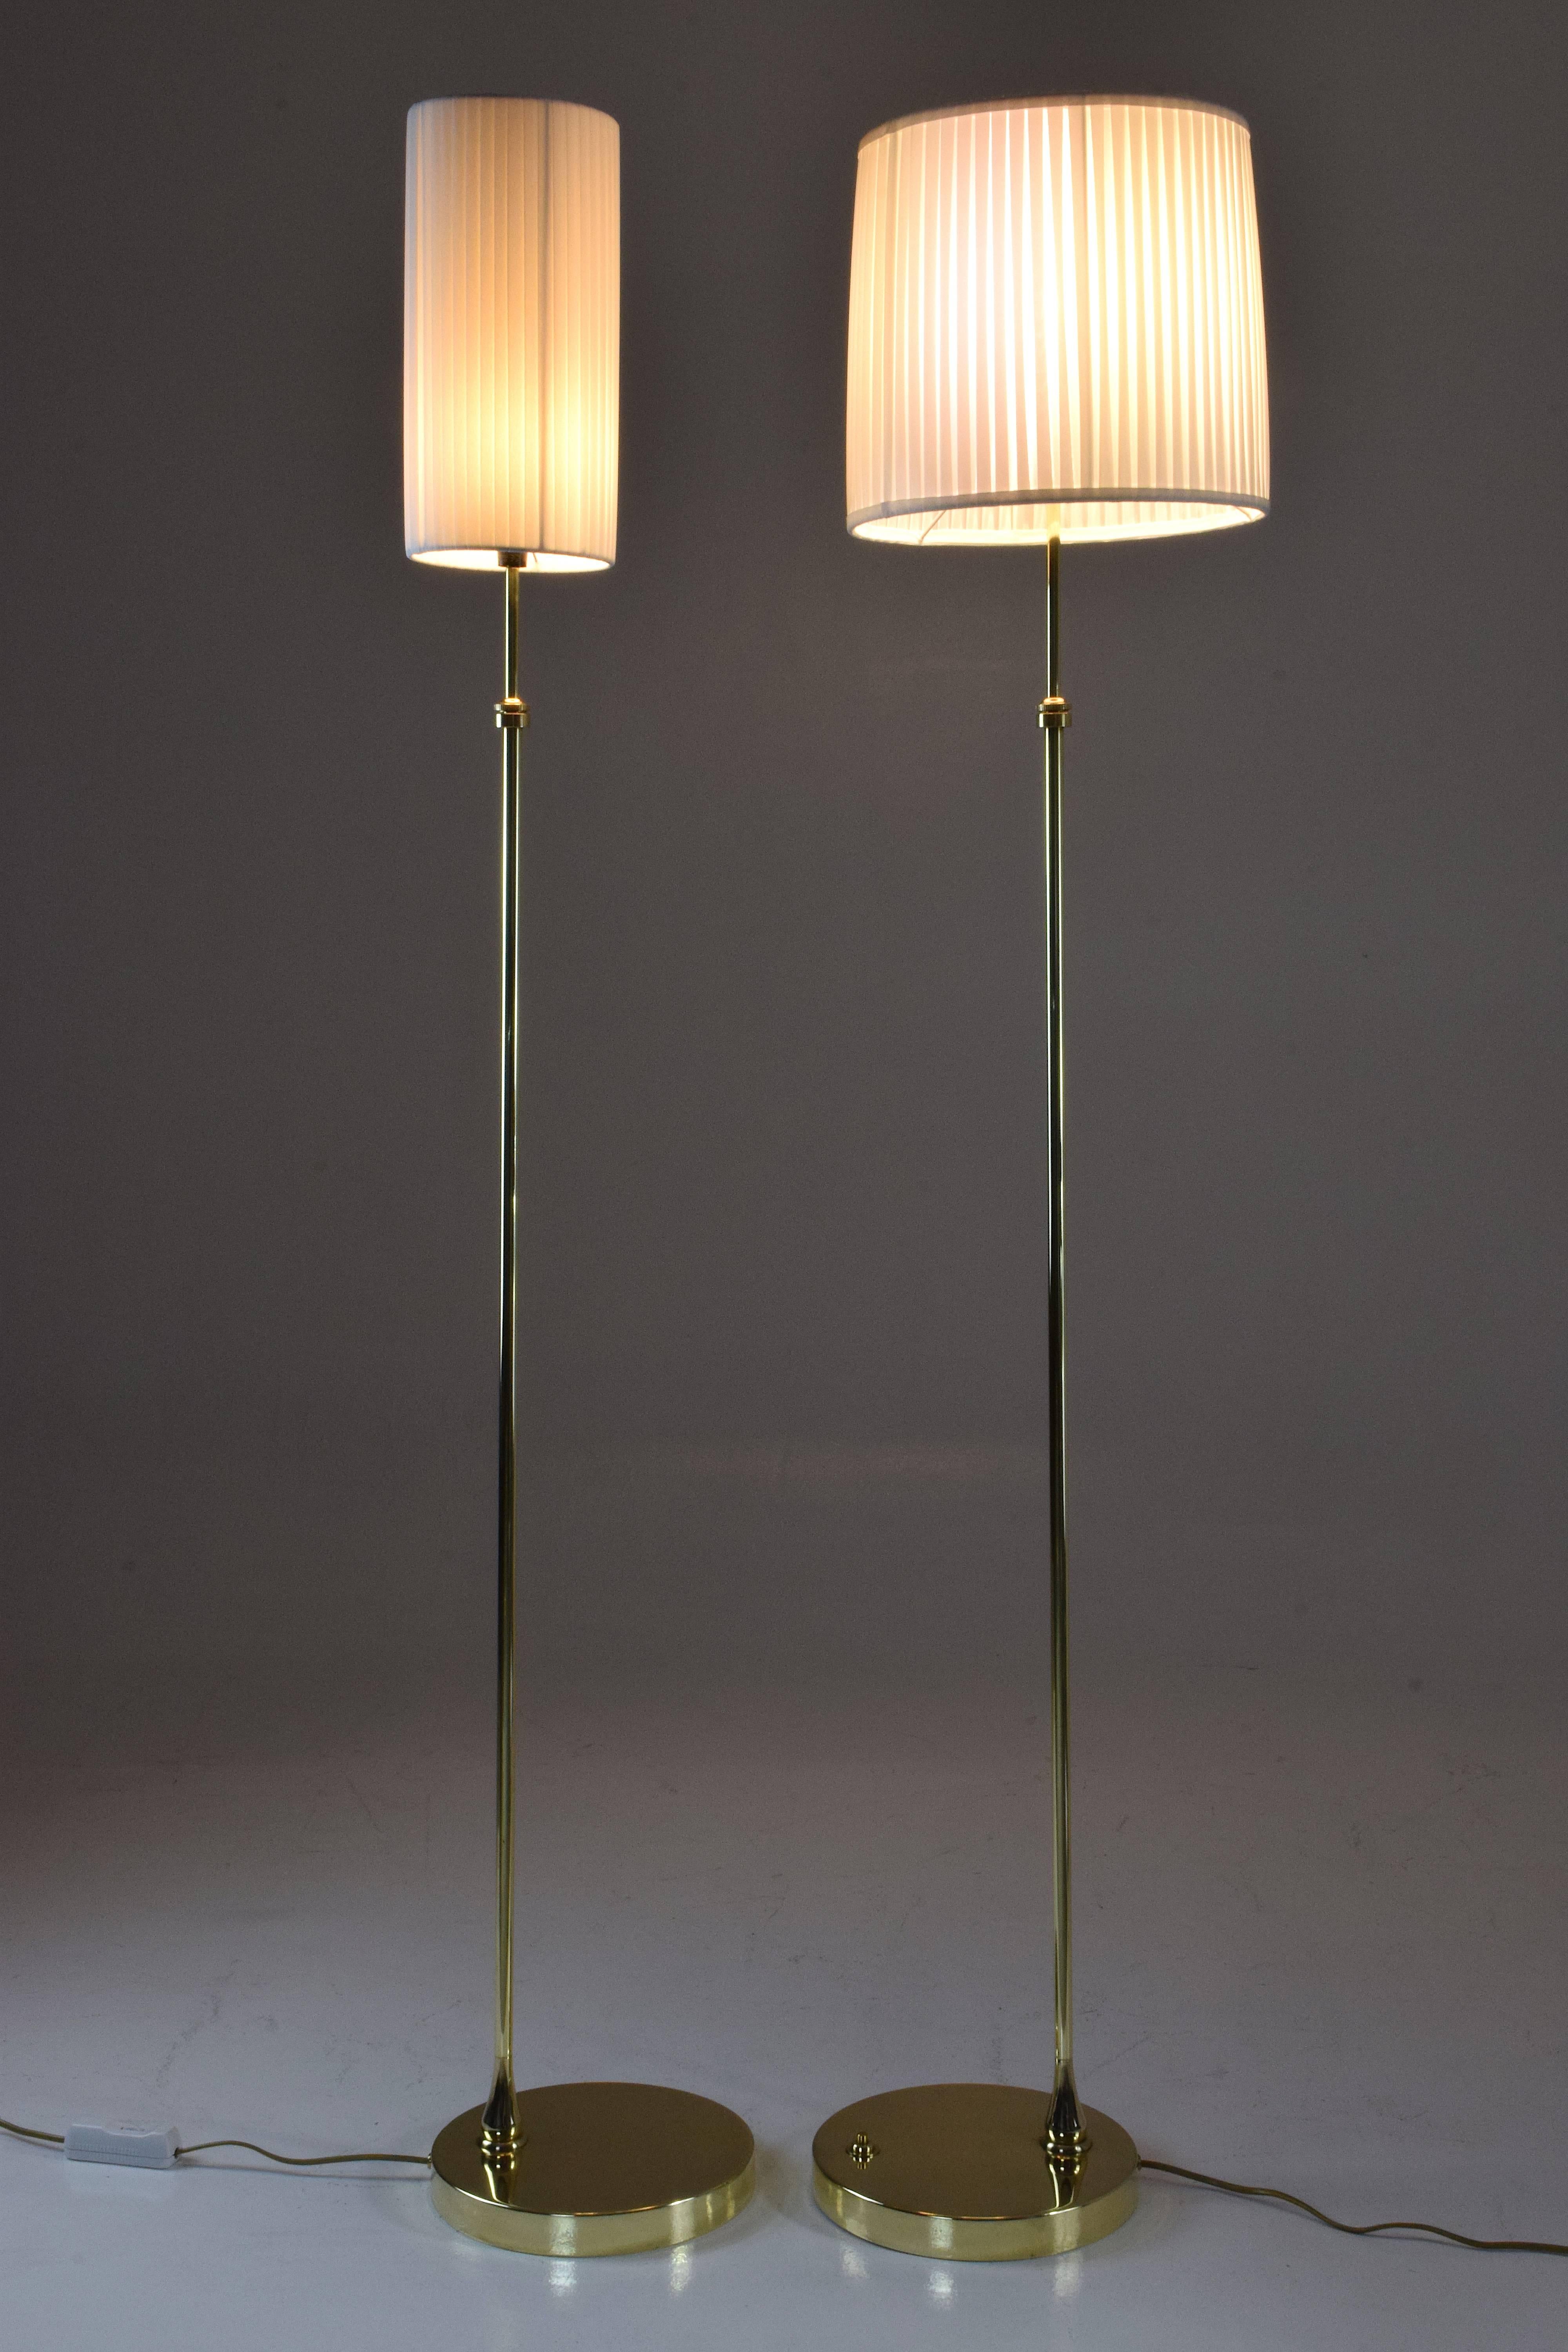 equilibrium designer lamp